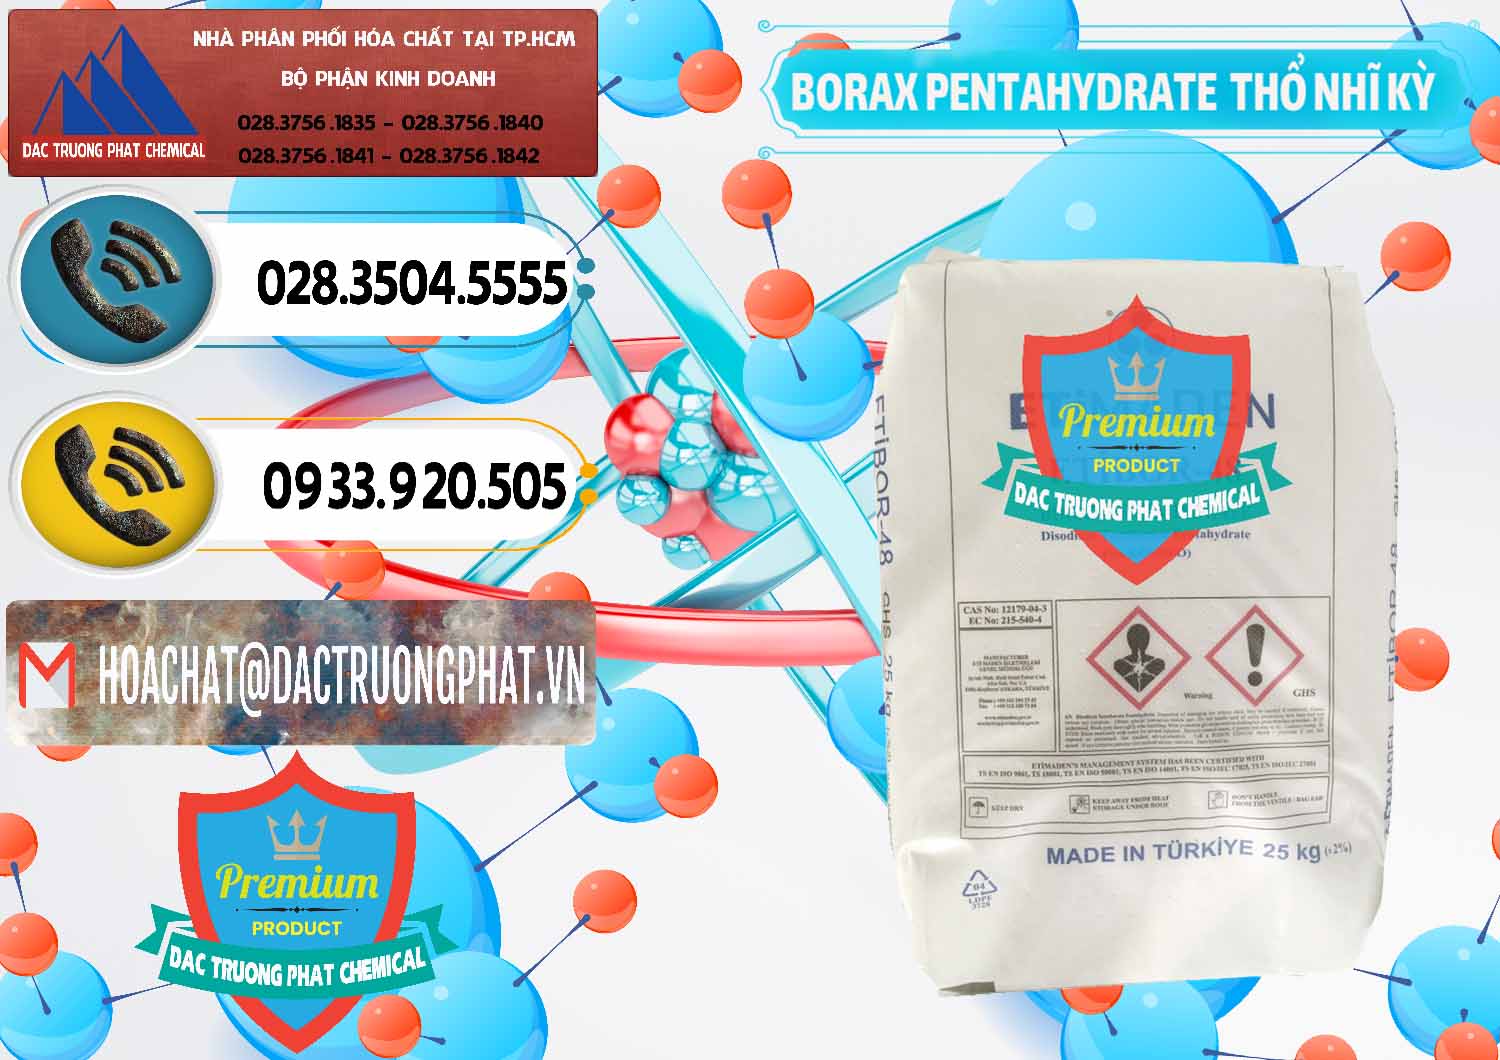 Nơi cung cấp - bán Borax Pentahydrate Thổ Nhĩ Kỳ Turkey - 0431 - Công ty cung cấp và phân phối hóa chất tại TP.HCM - hoachatdetnhuom.vn